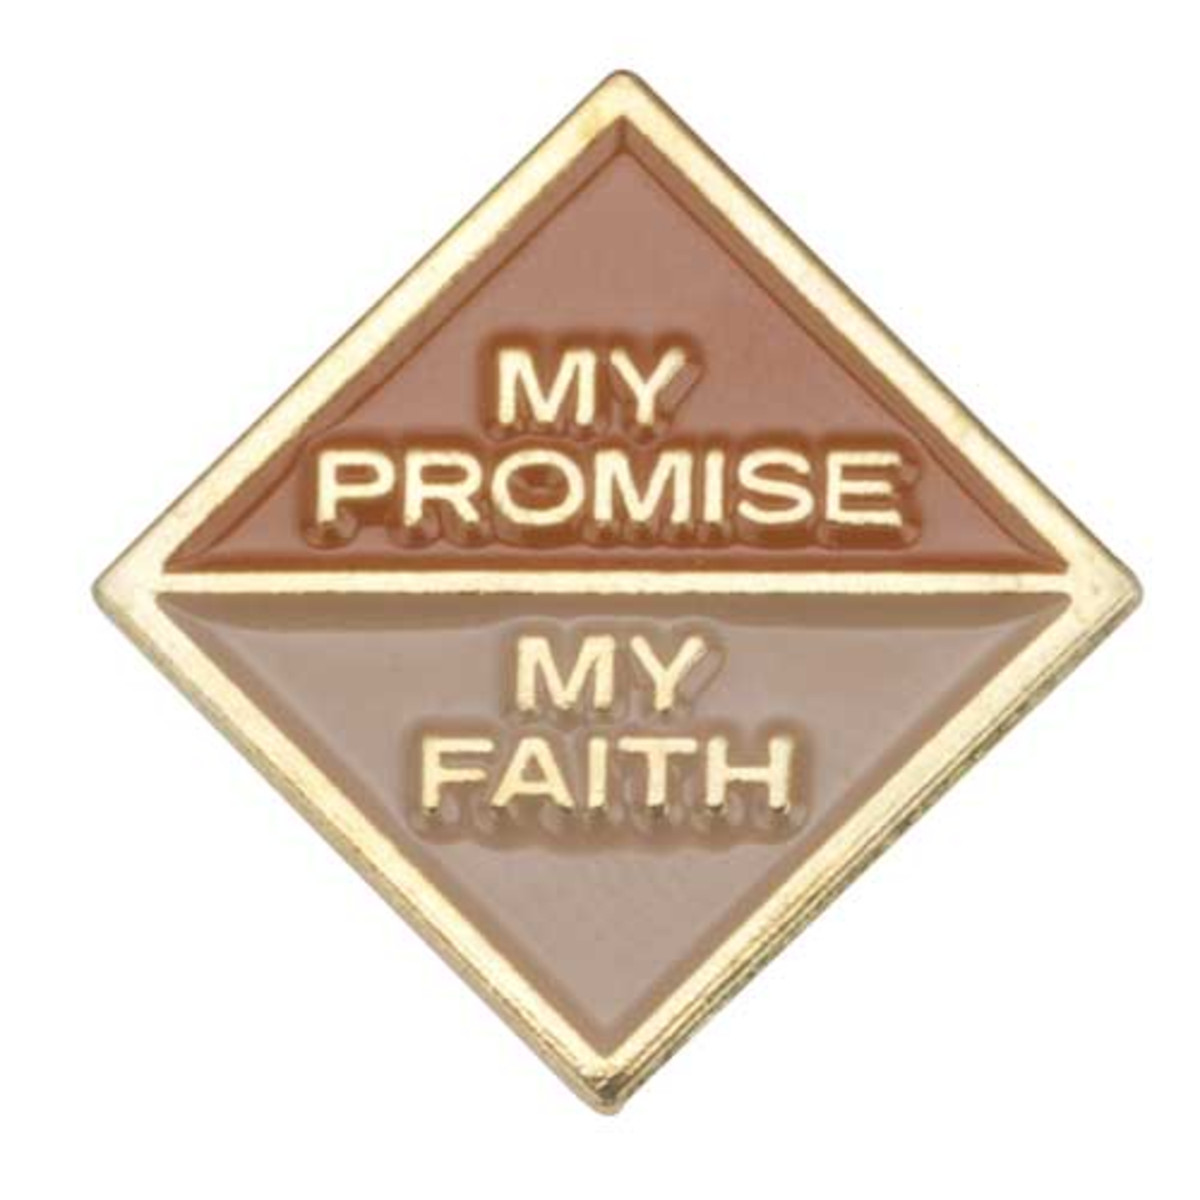 Br. My Promise My Faith 2